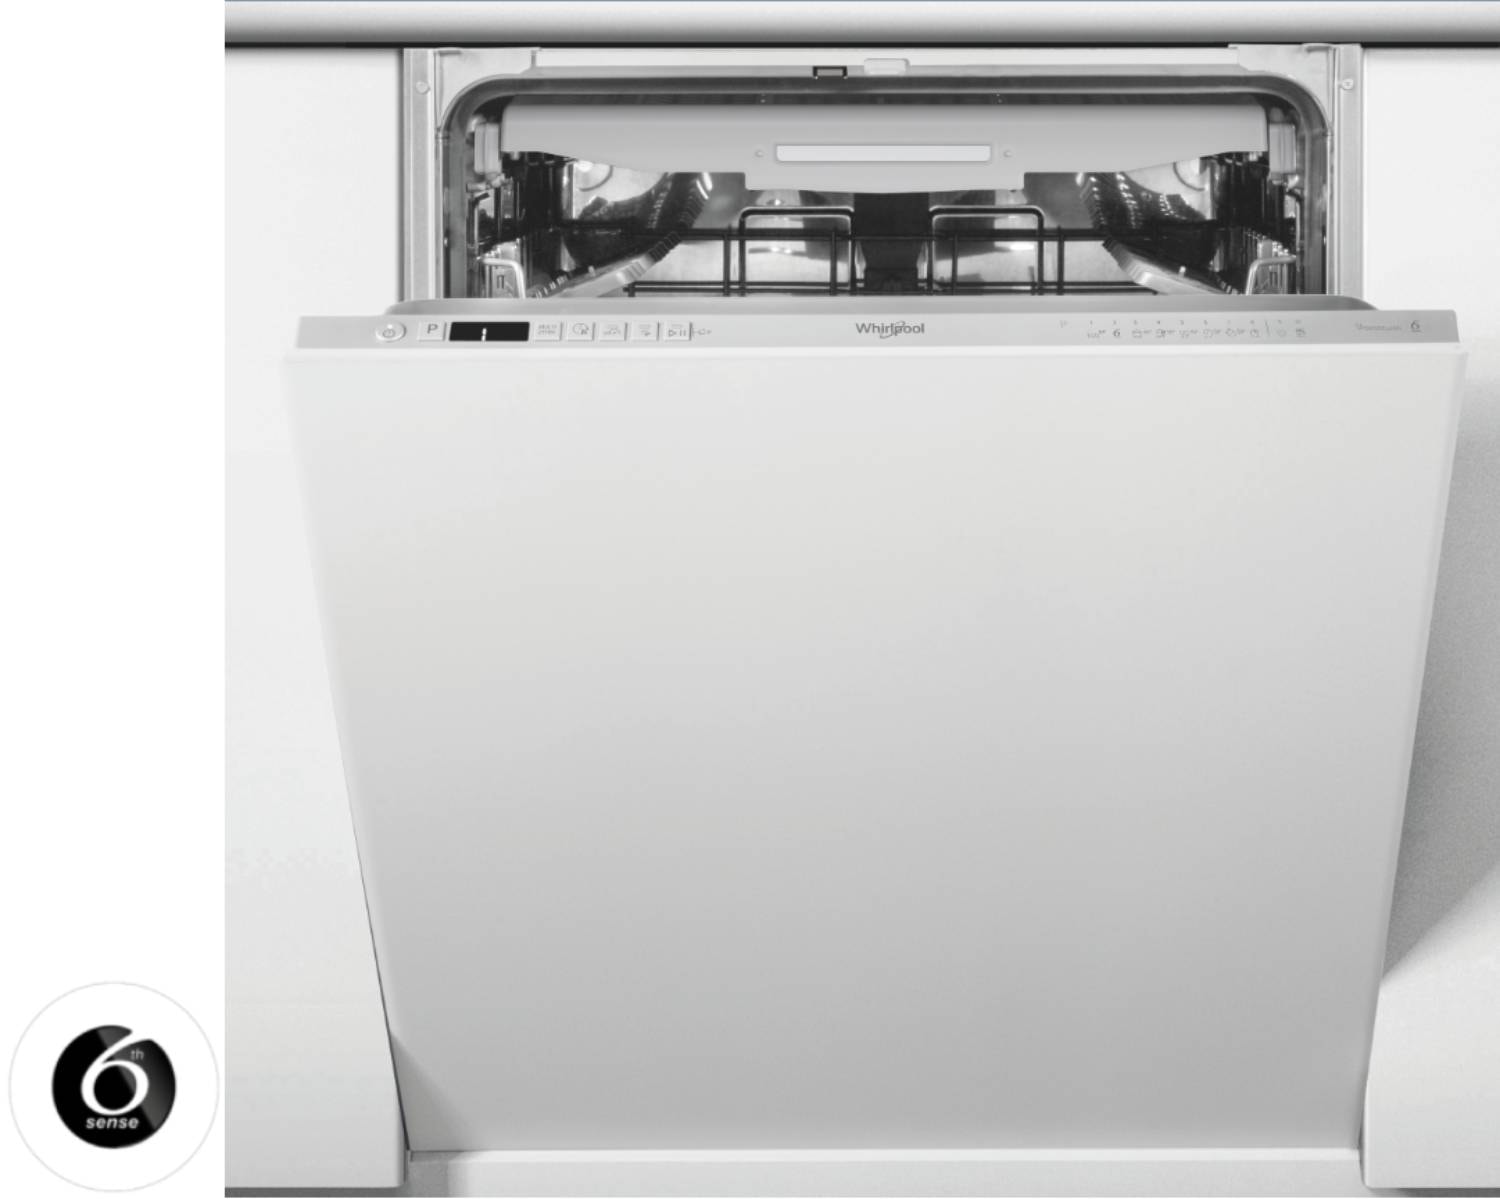 whirlpool - Lave vaisselle integrable 60 cm WBC3C33PX 6ème Sens